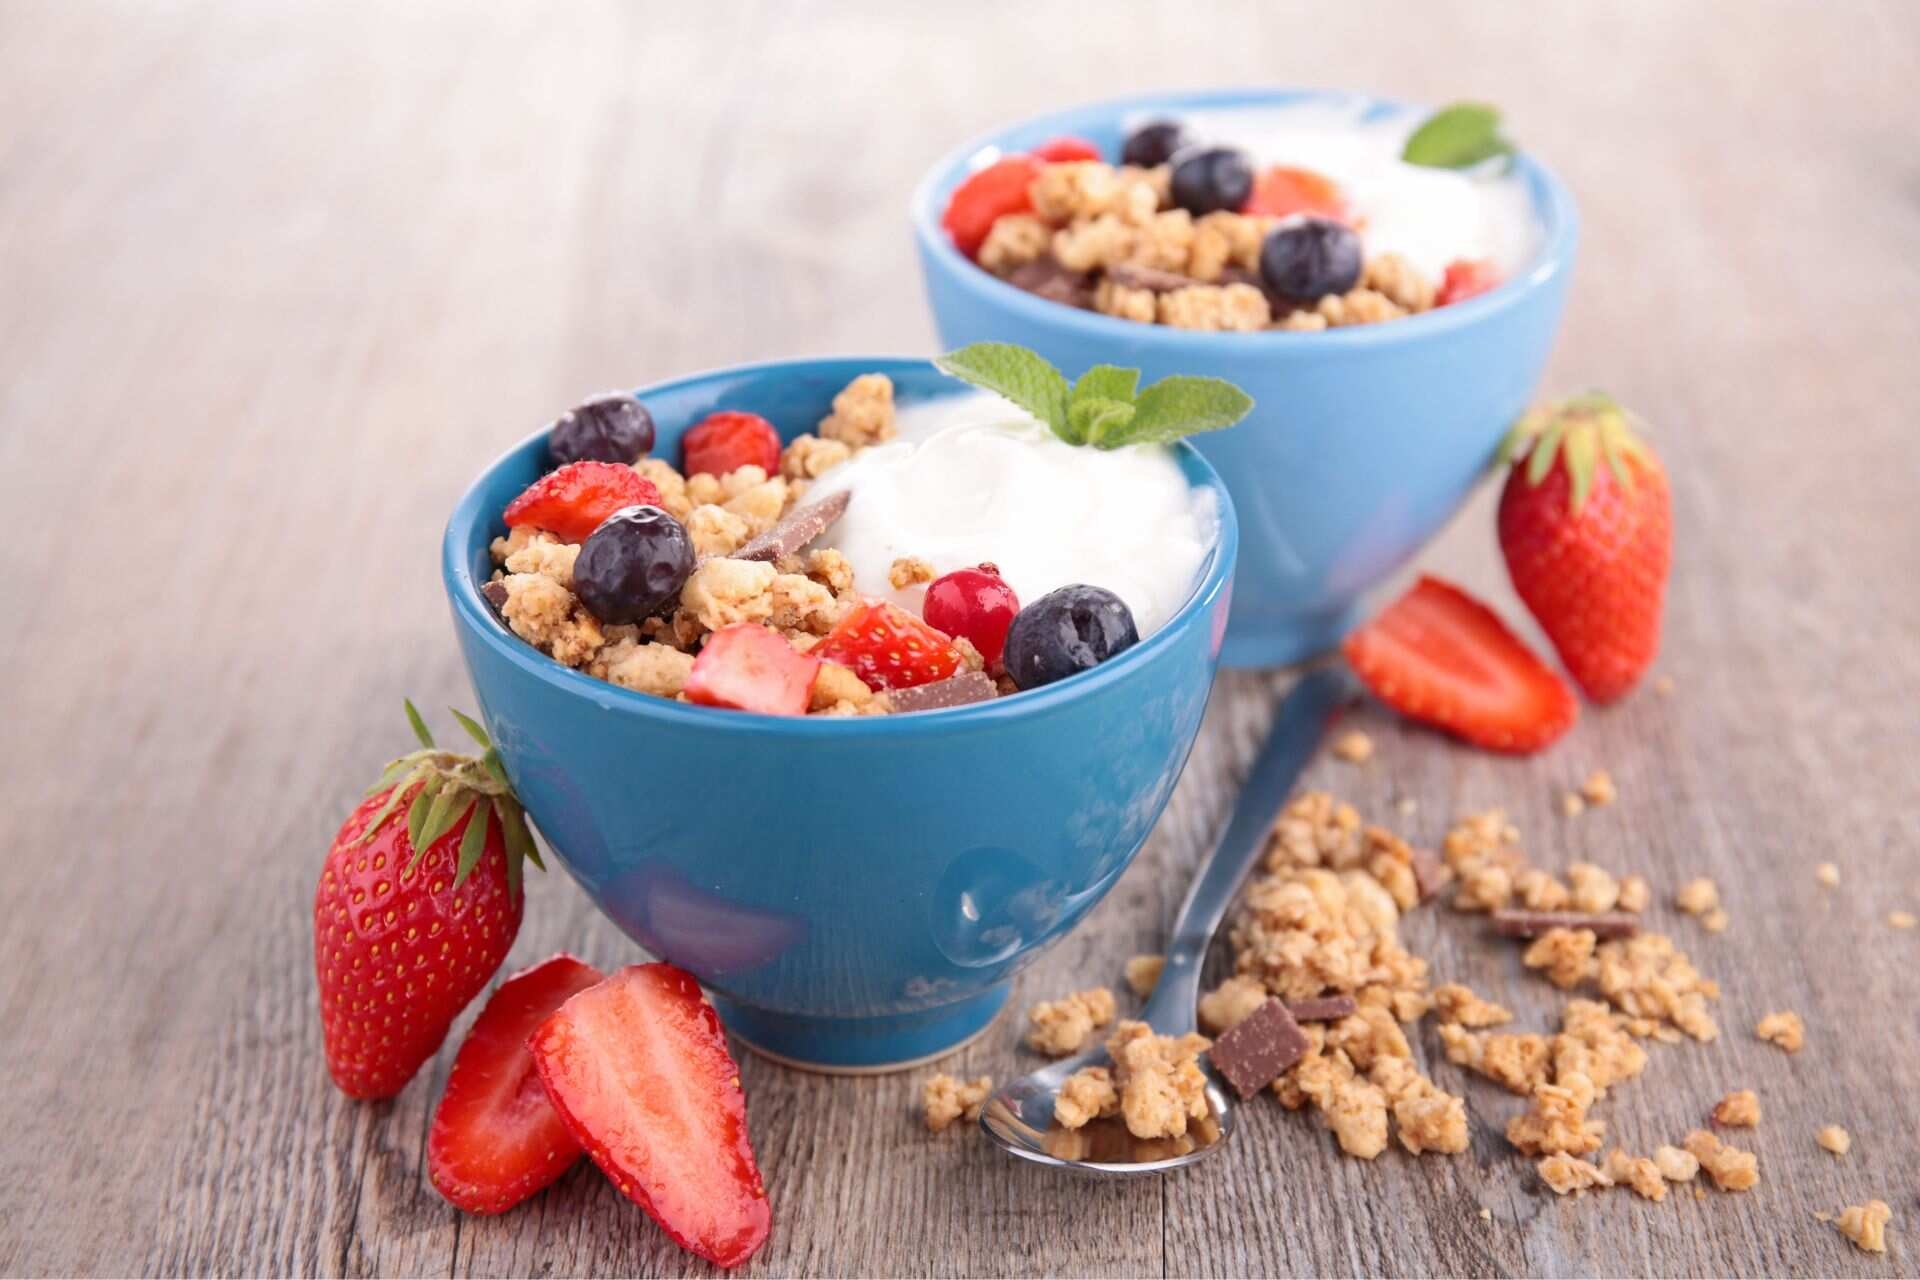 Bulă gastrică: este indicat să evitați suma de fructe și cereale în timpul unei mese